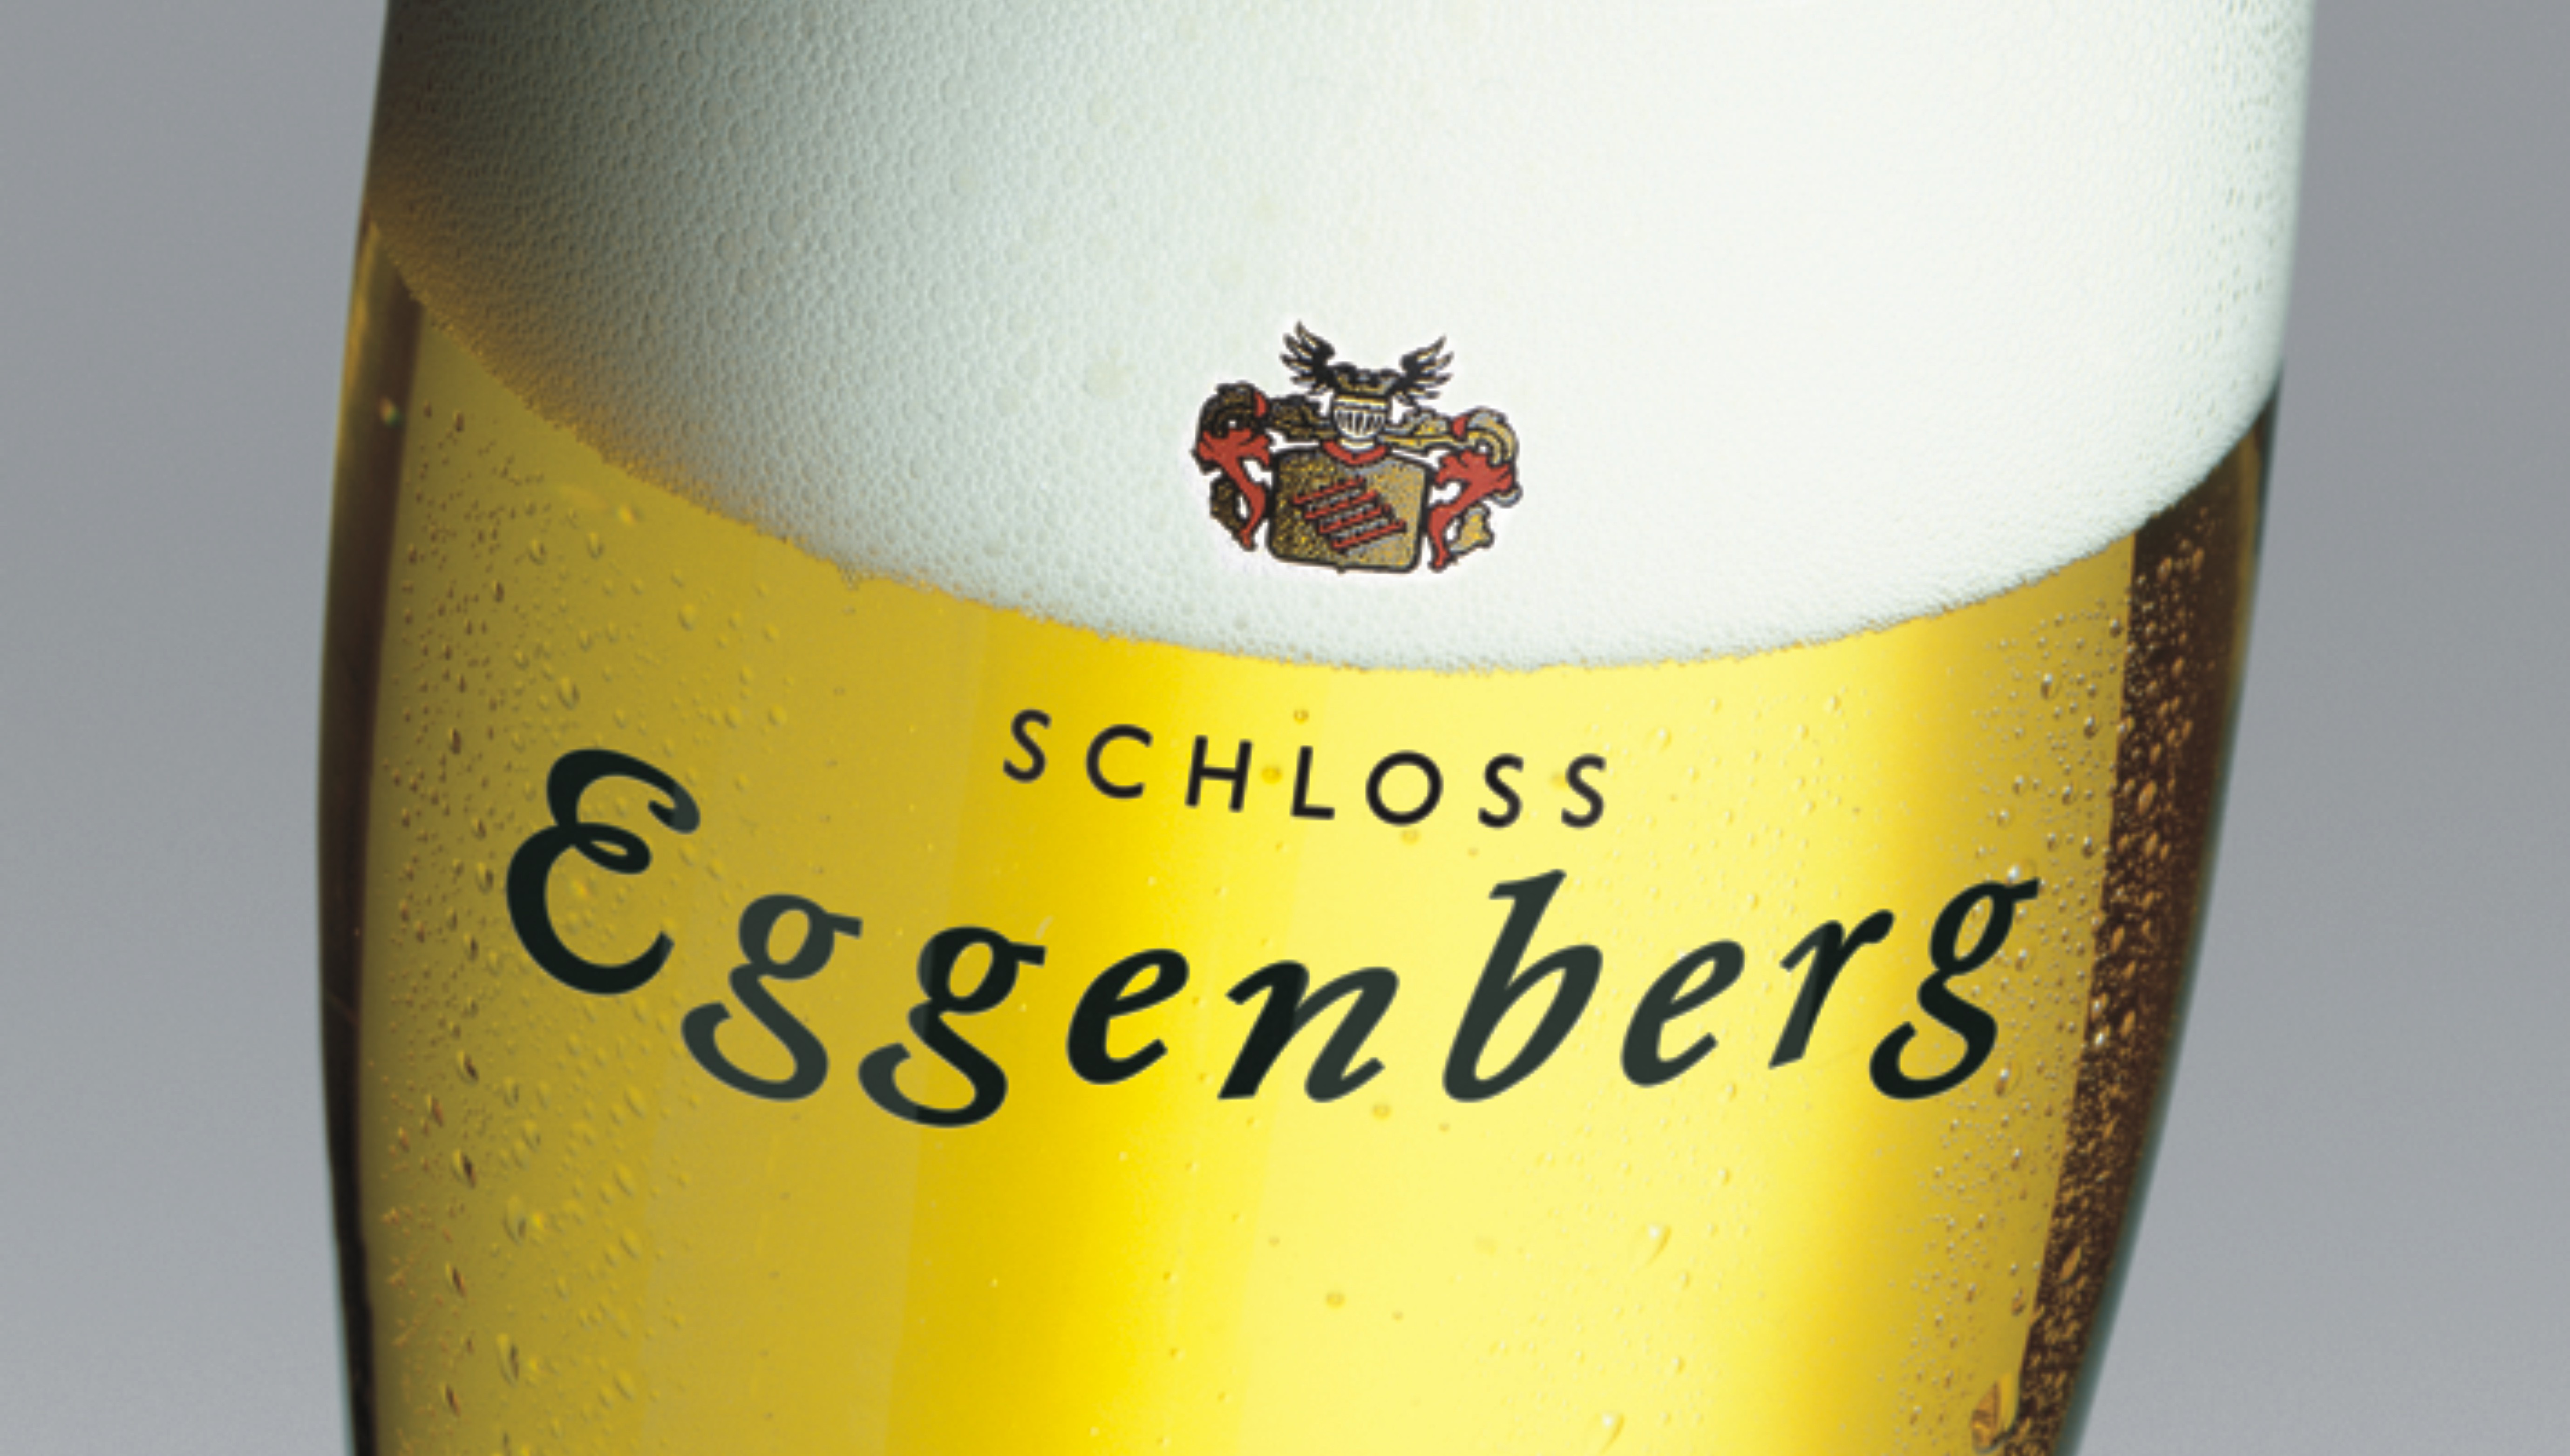 Eggenberger Bier